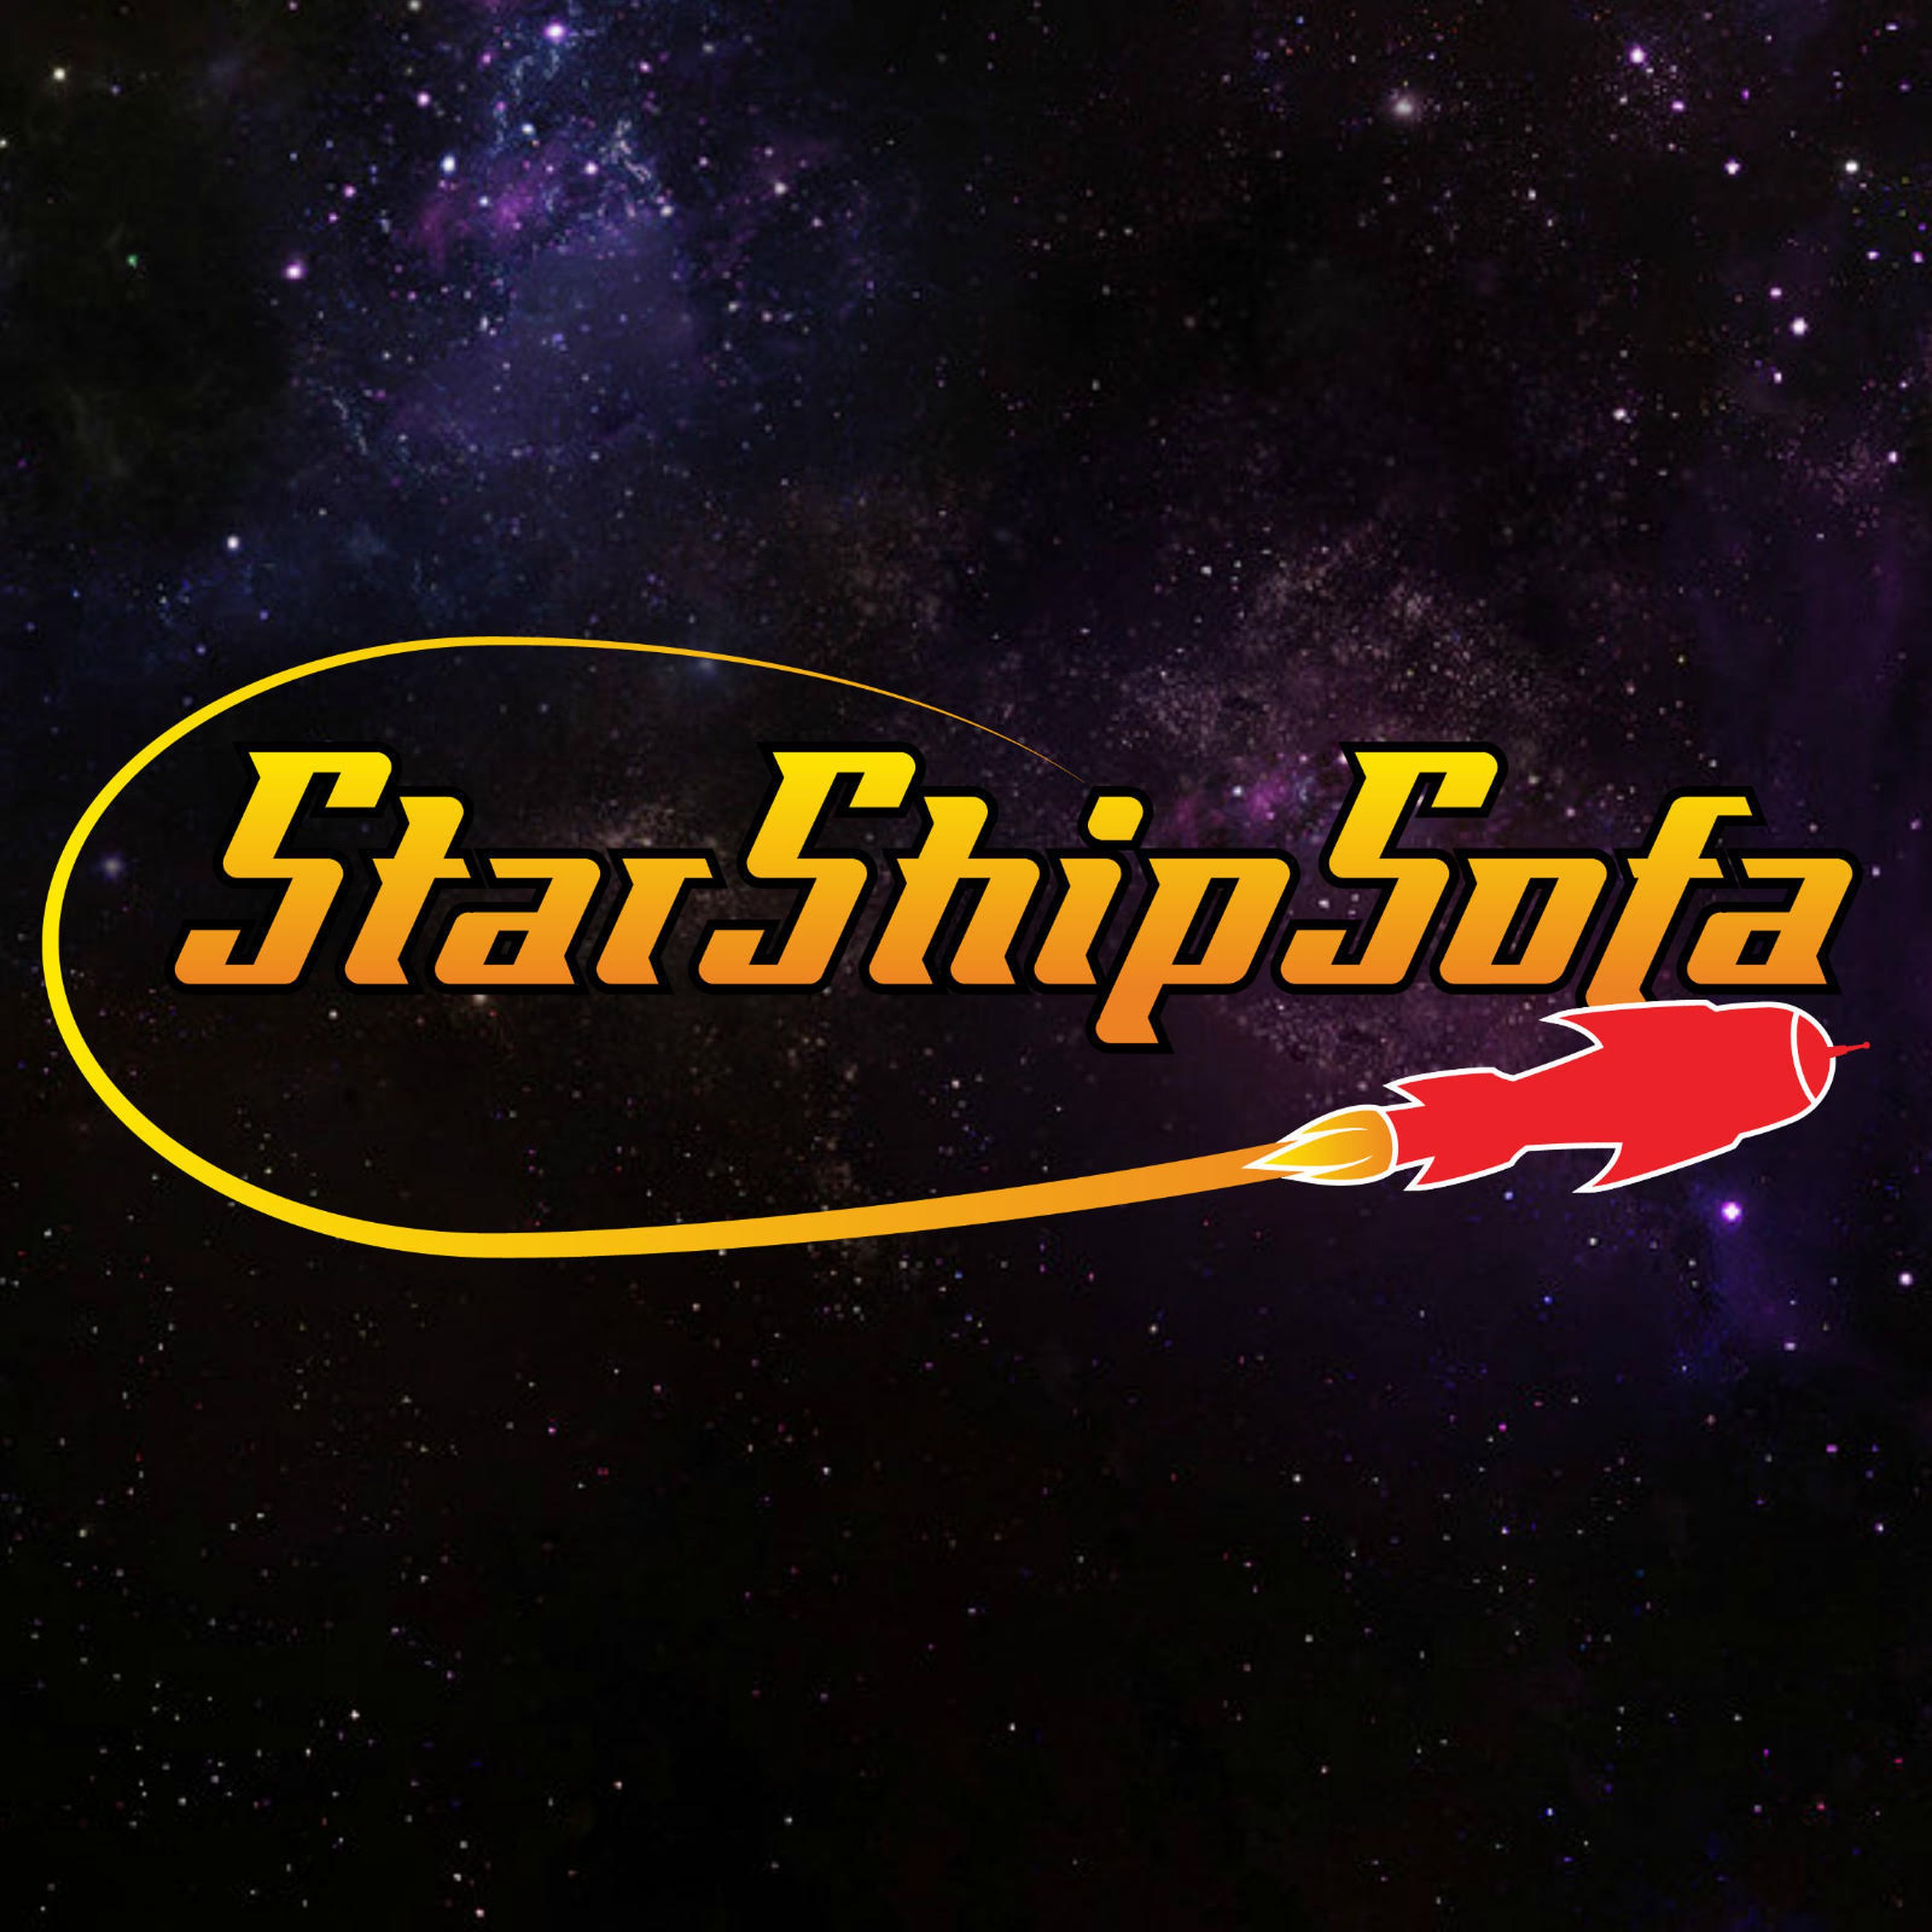 StarShipSofa No 607 Steve Toase